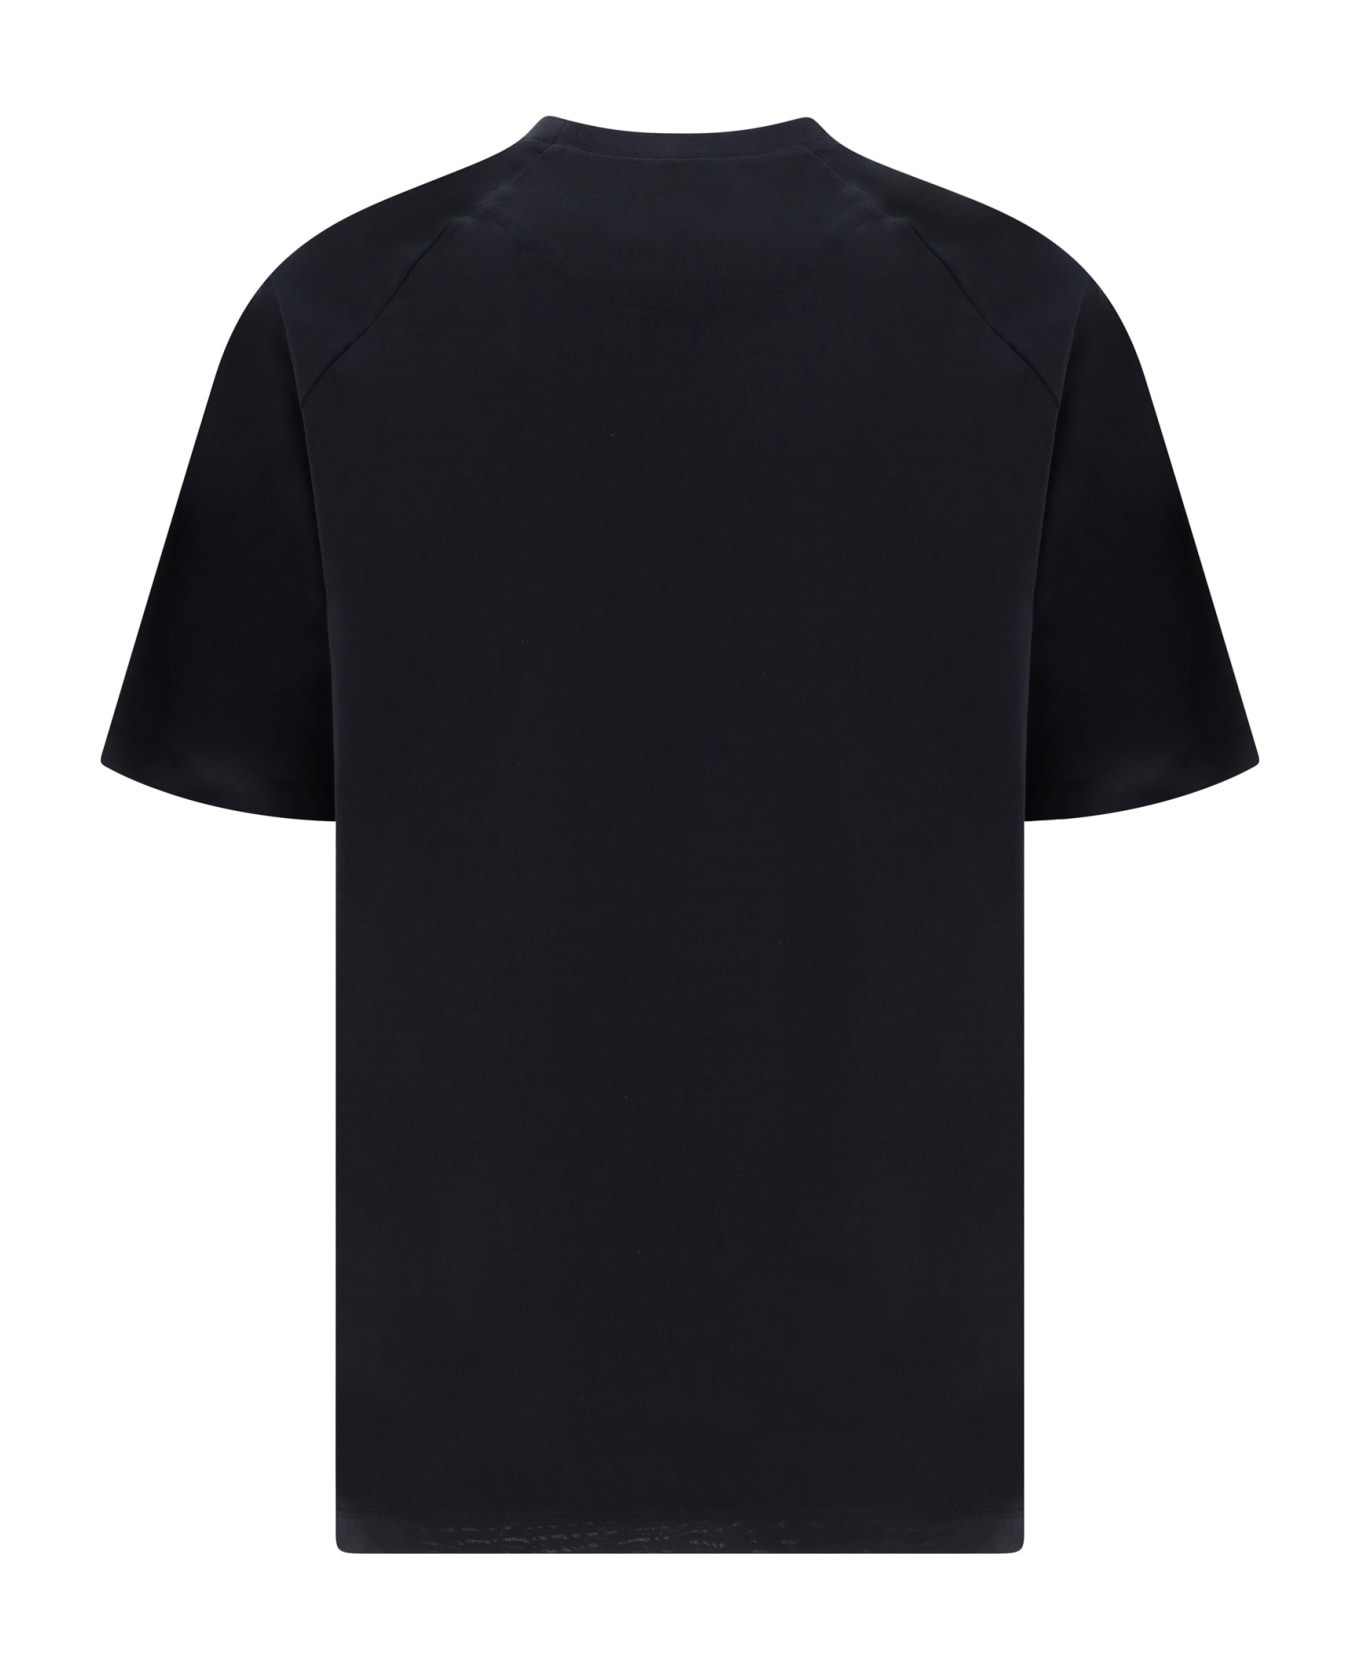 Y-3 T-shirt - Black/owhite